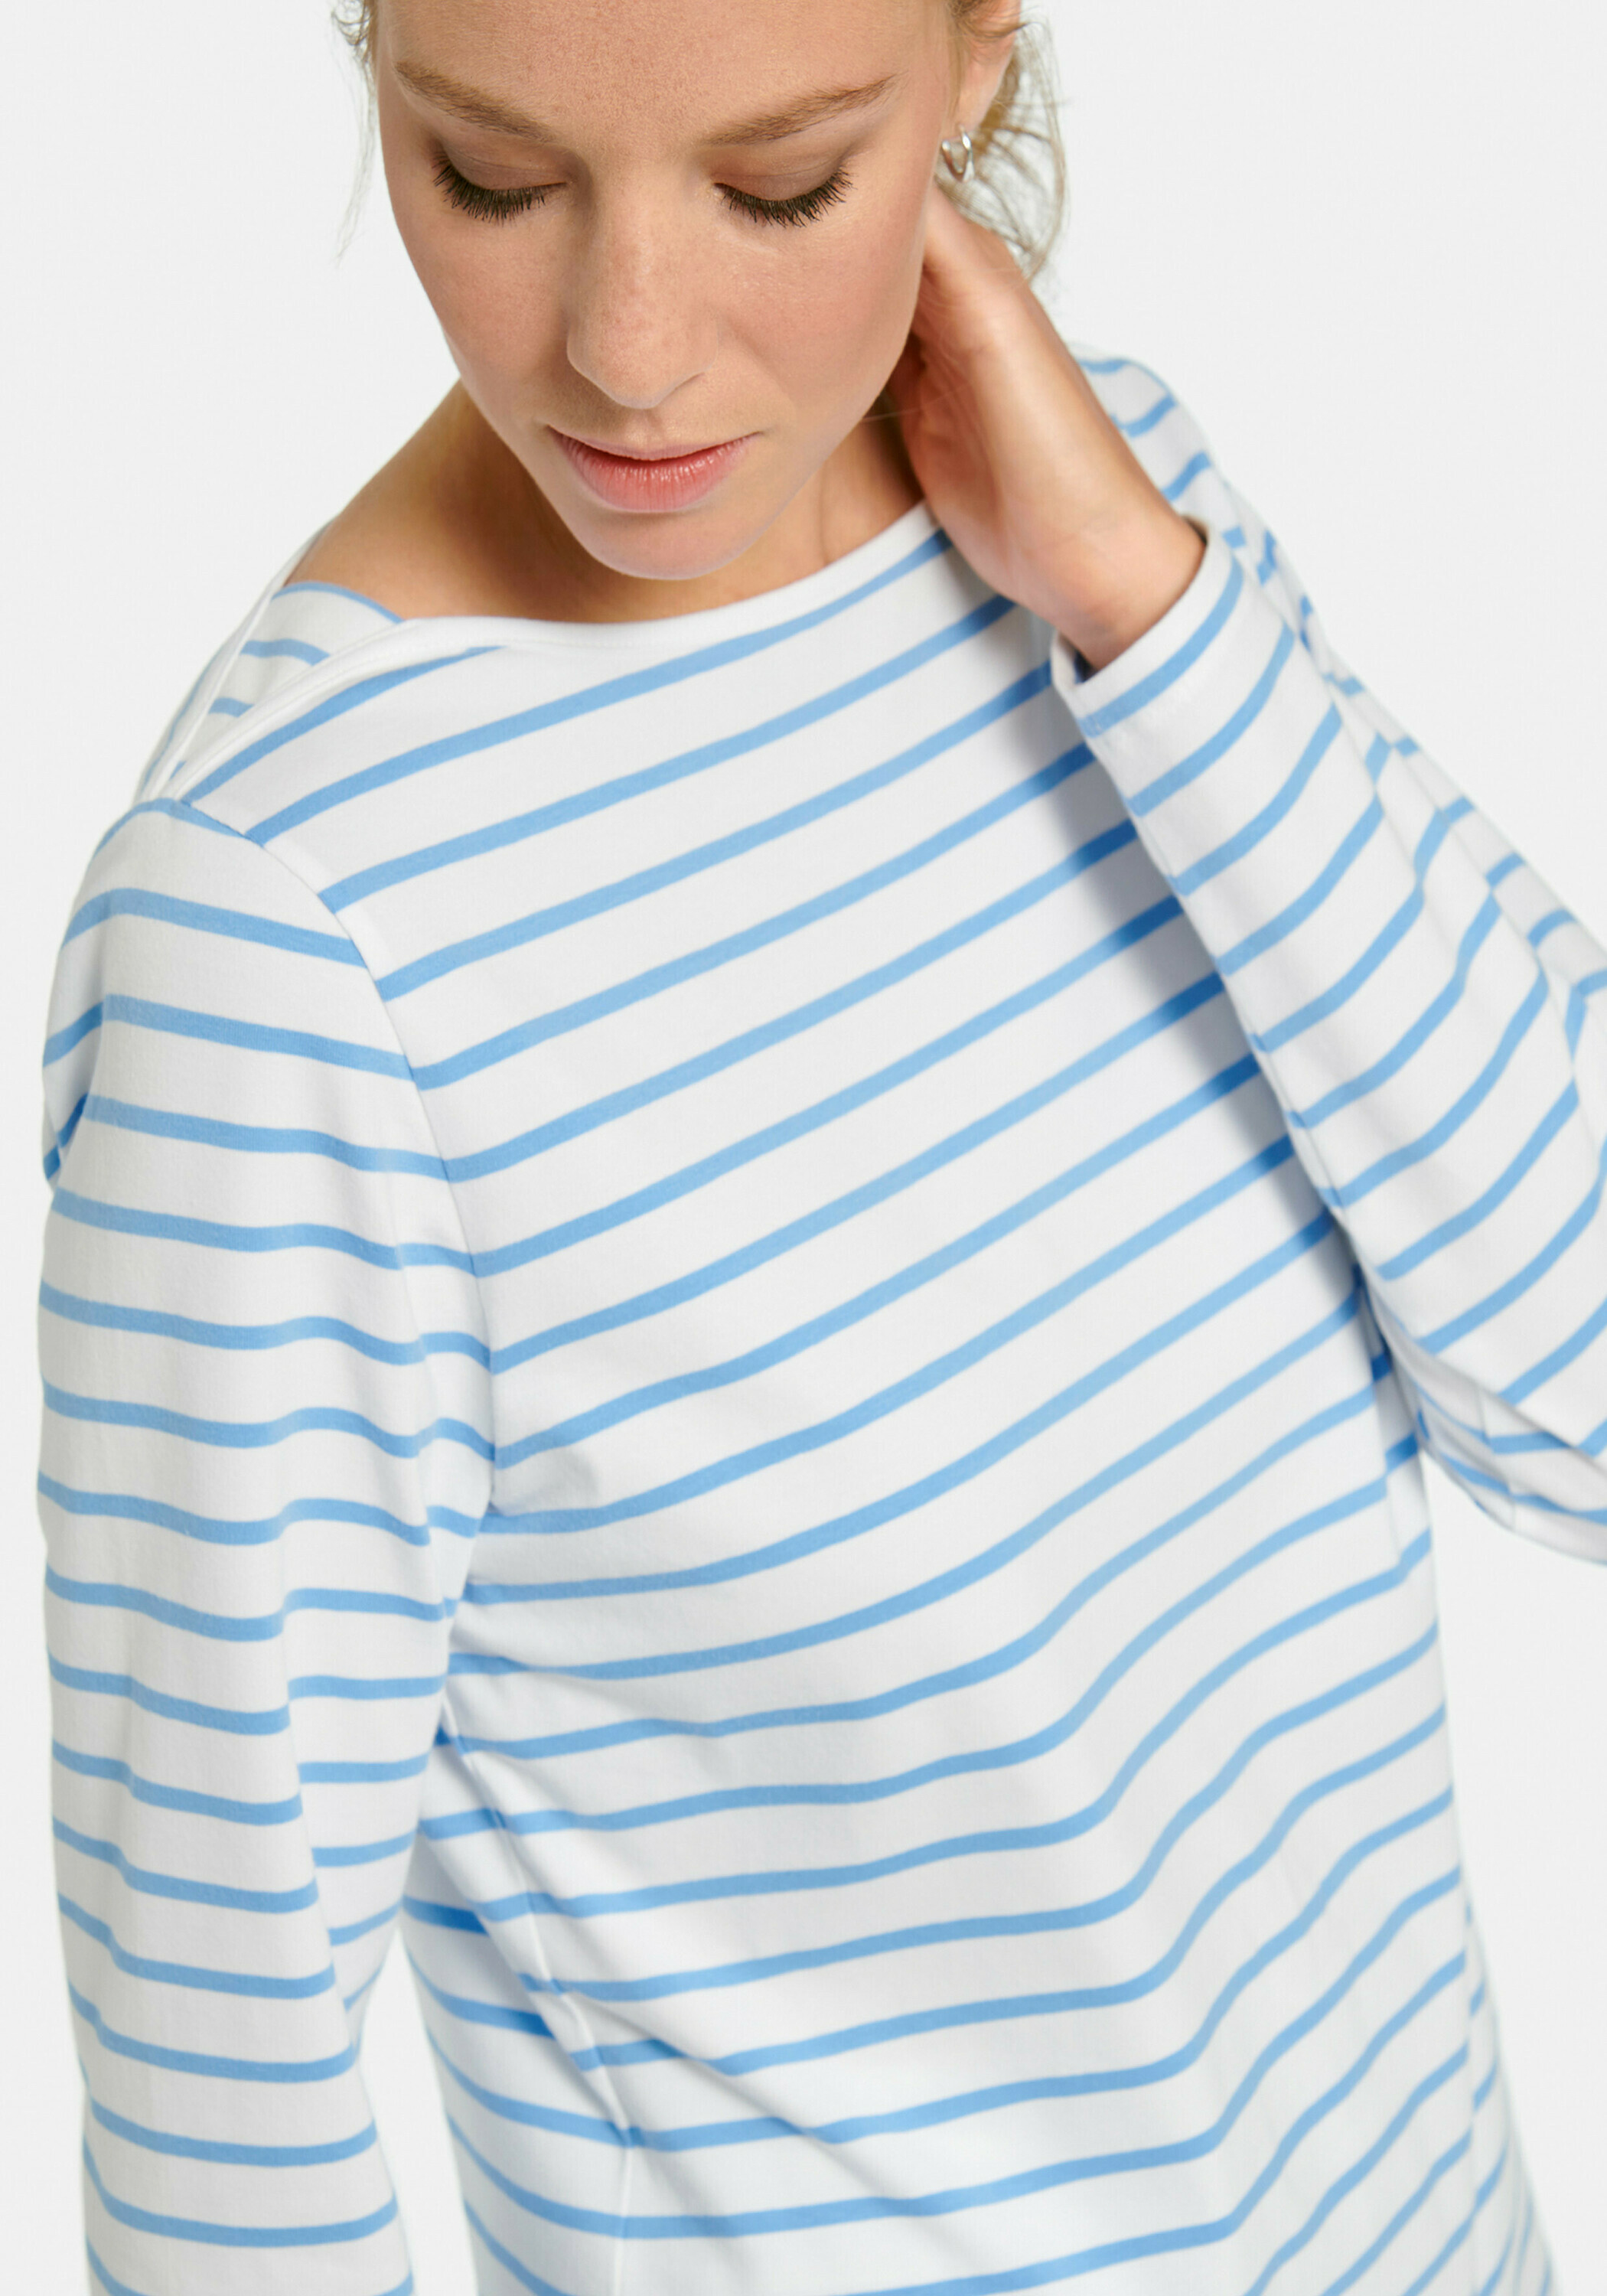 MYBC Shirt mit Streifen-Muster in Weiß, Blau, Hellblau 